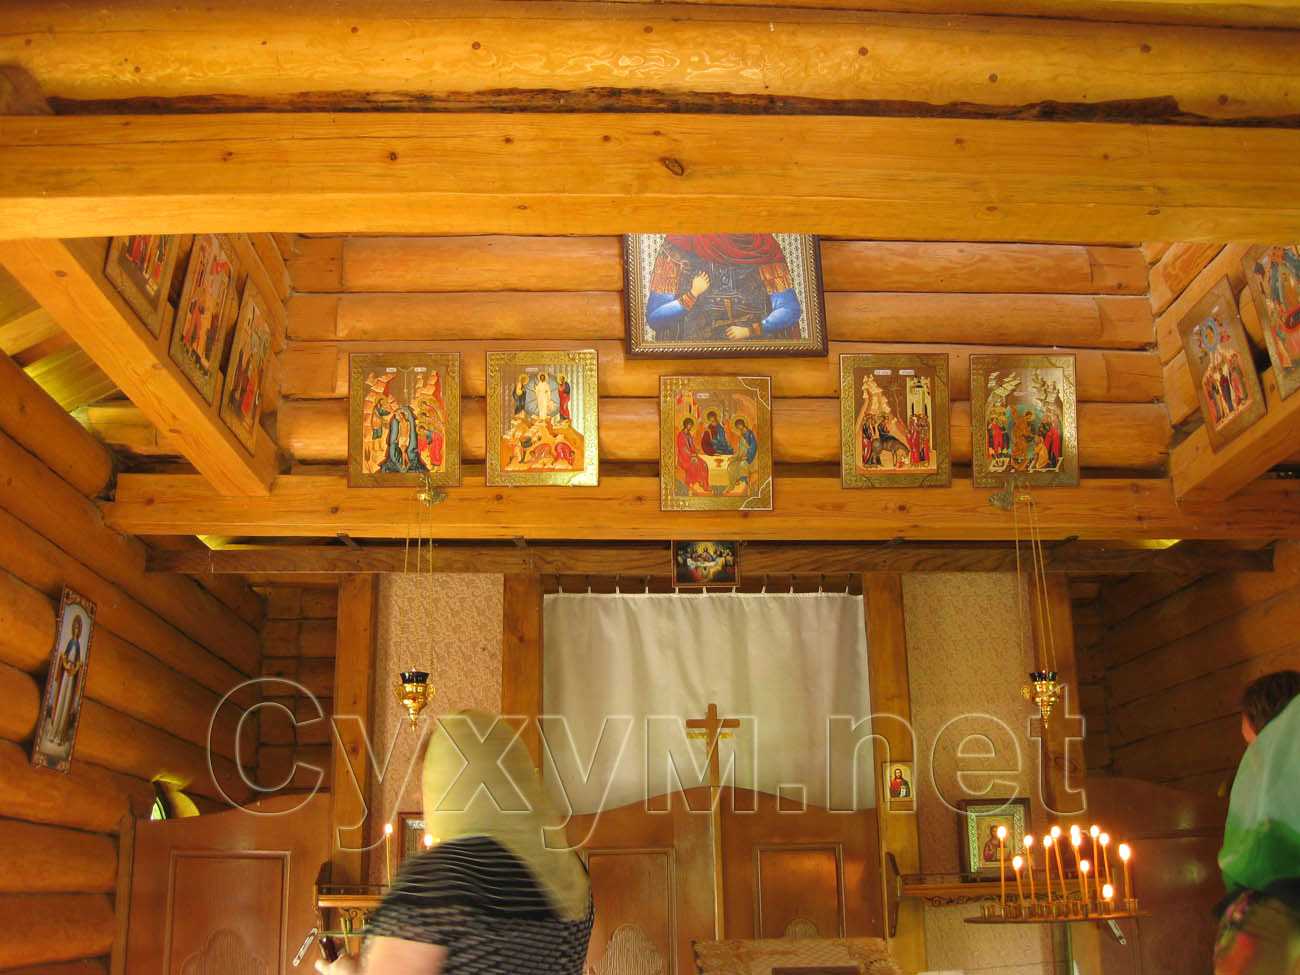 в центре храма размещён деревянный крест